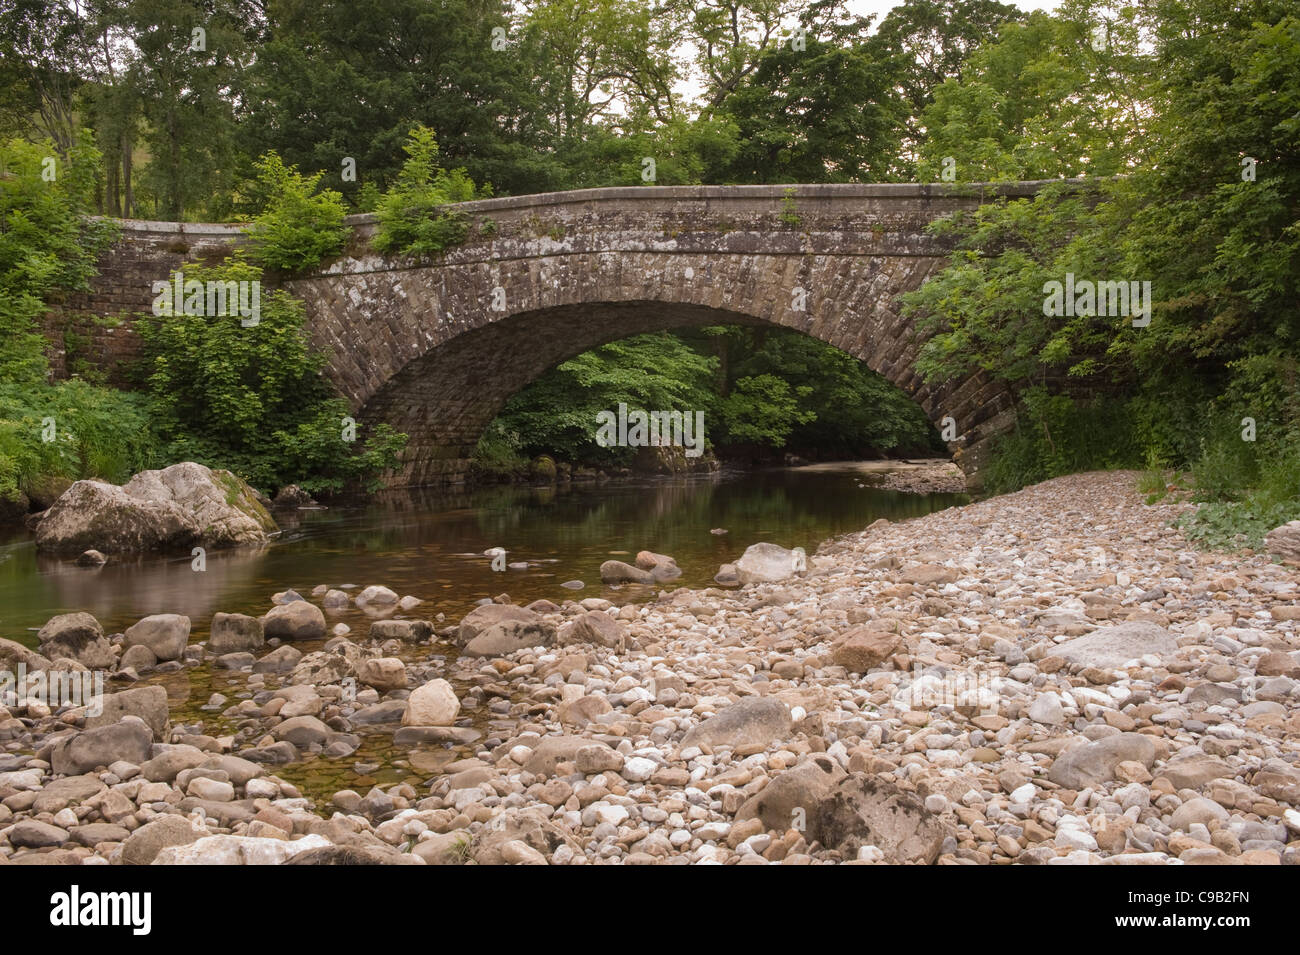 Antica pietra ponte stradale (1 arch) spanning shallow che scorre acqua di fiume Wharfe (quiet scenic boscosa valle) - Hubberholme, Yorkshire Dales, England, Regno Unito Foto Stock